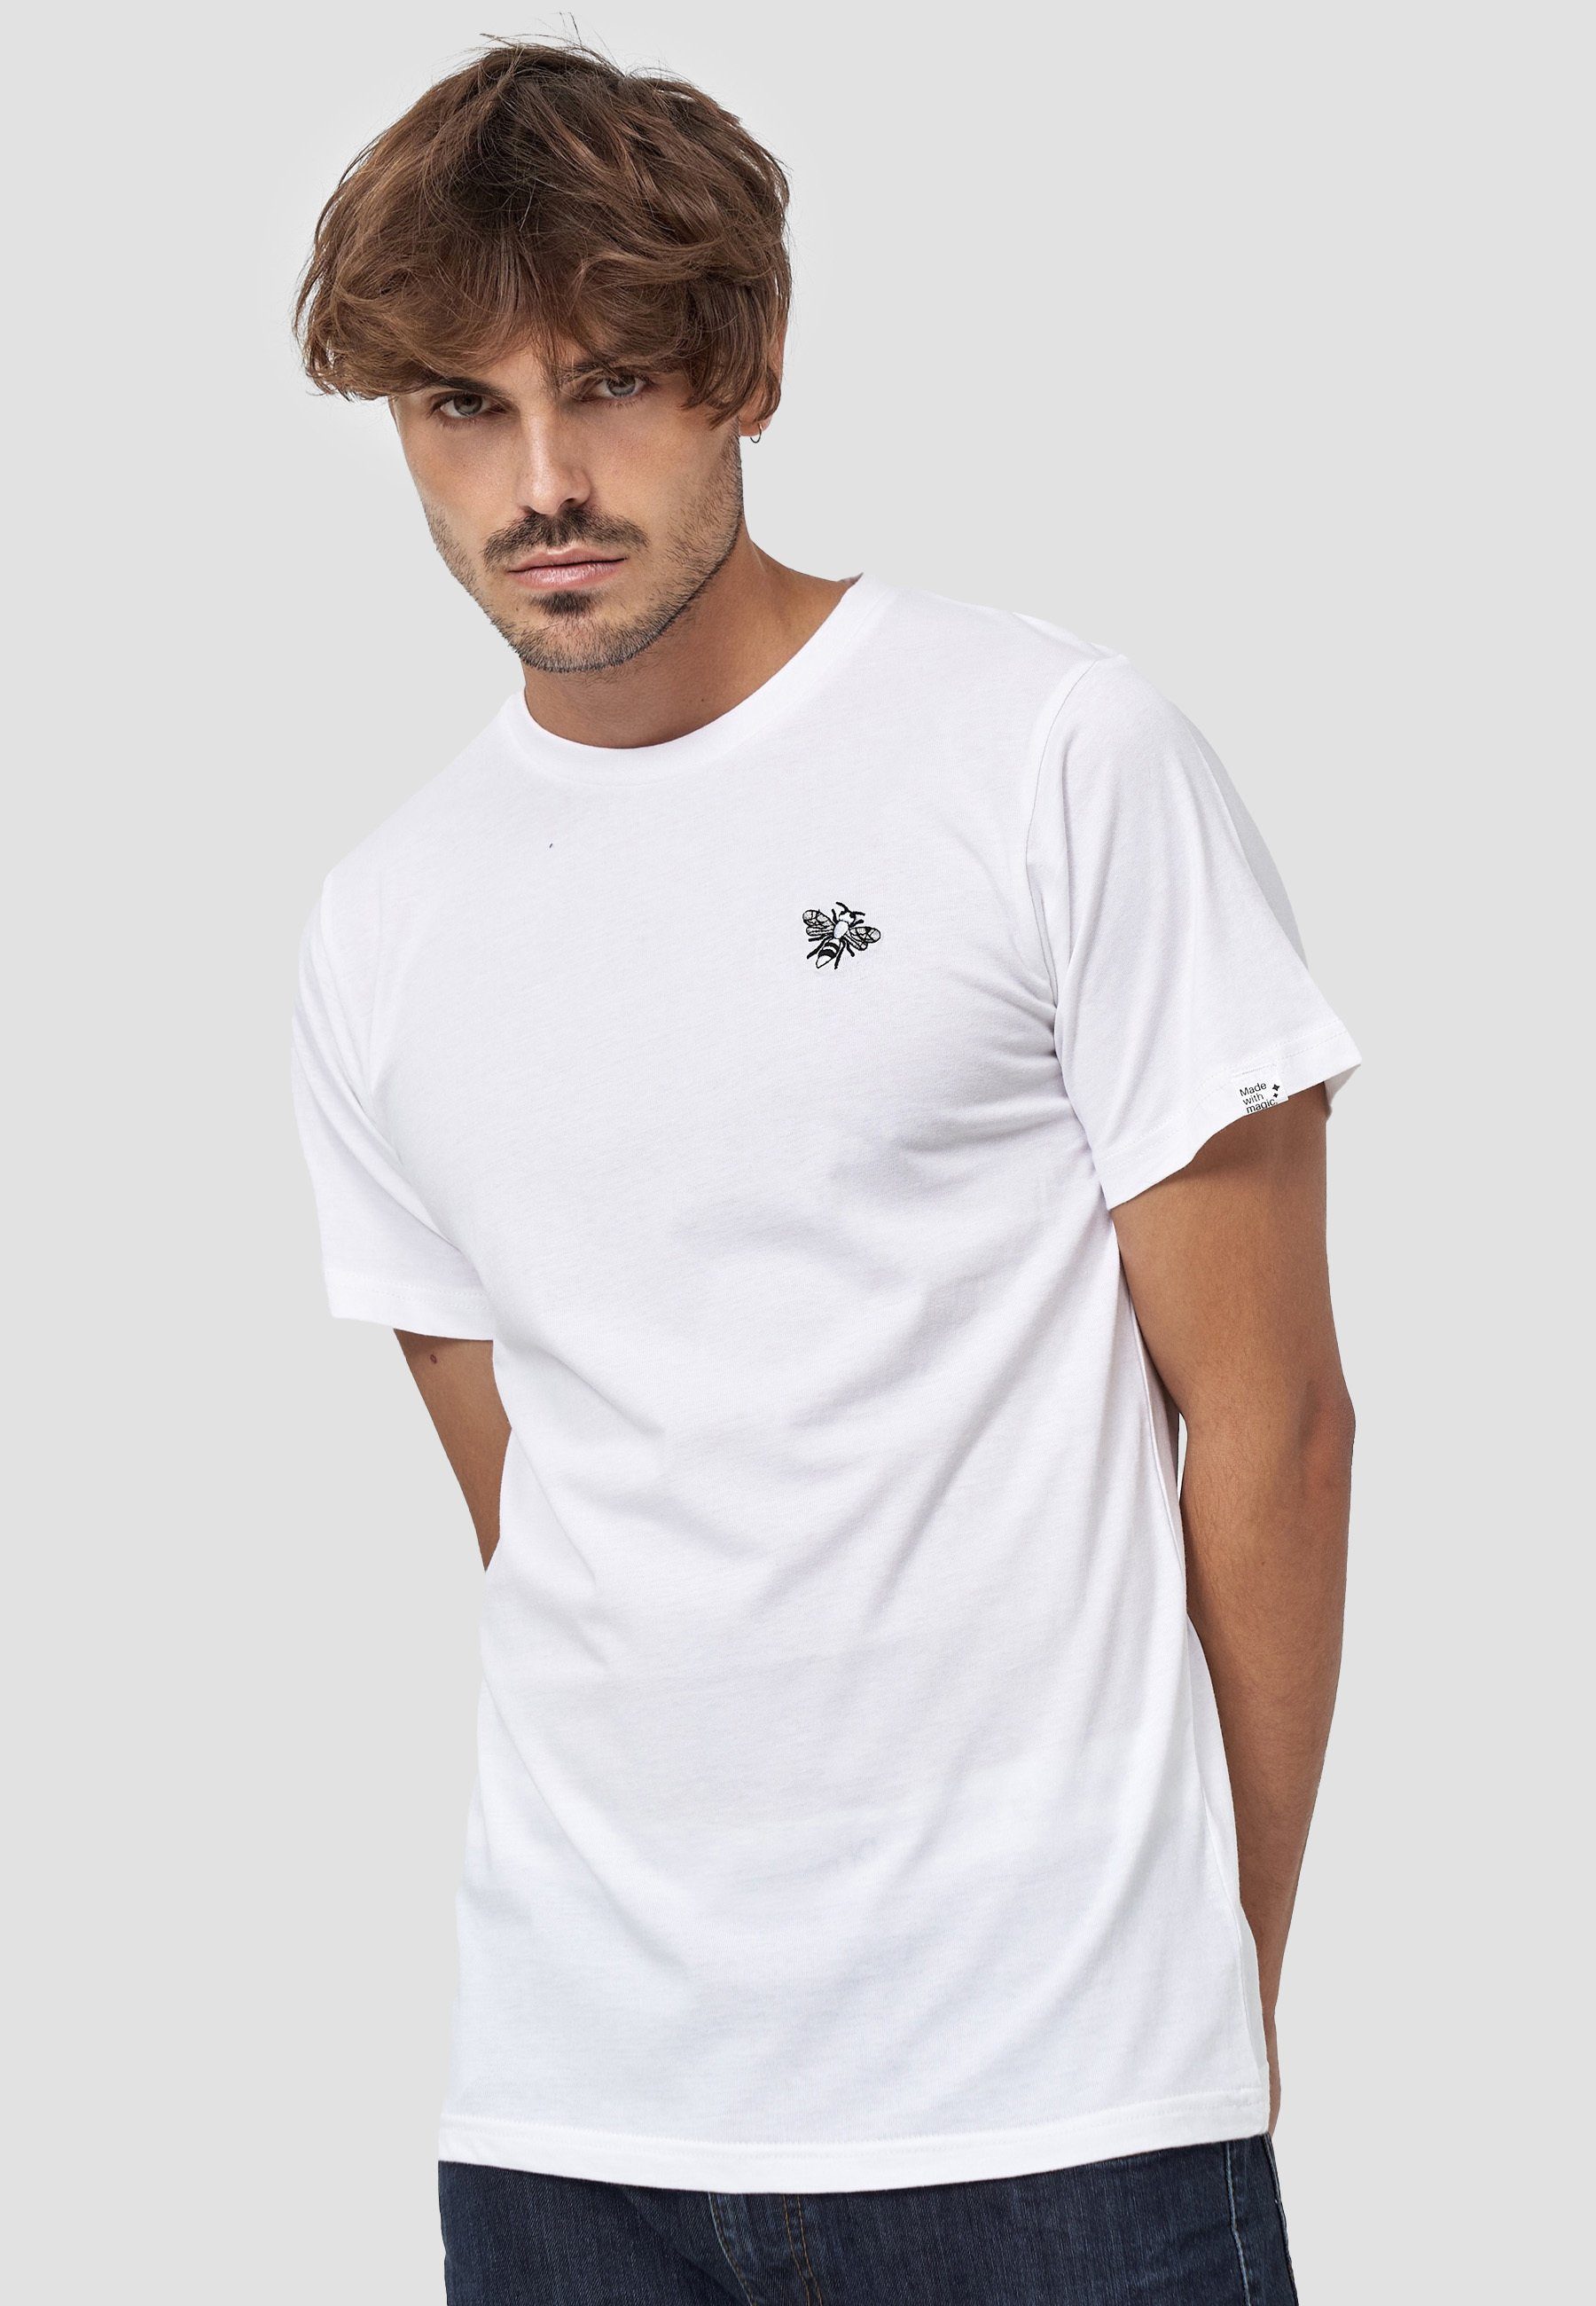 MIKON T-Shirt Fliege GOTS zertifizierte Bio-Baumwolle Weiß